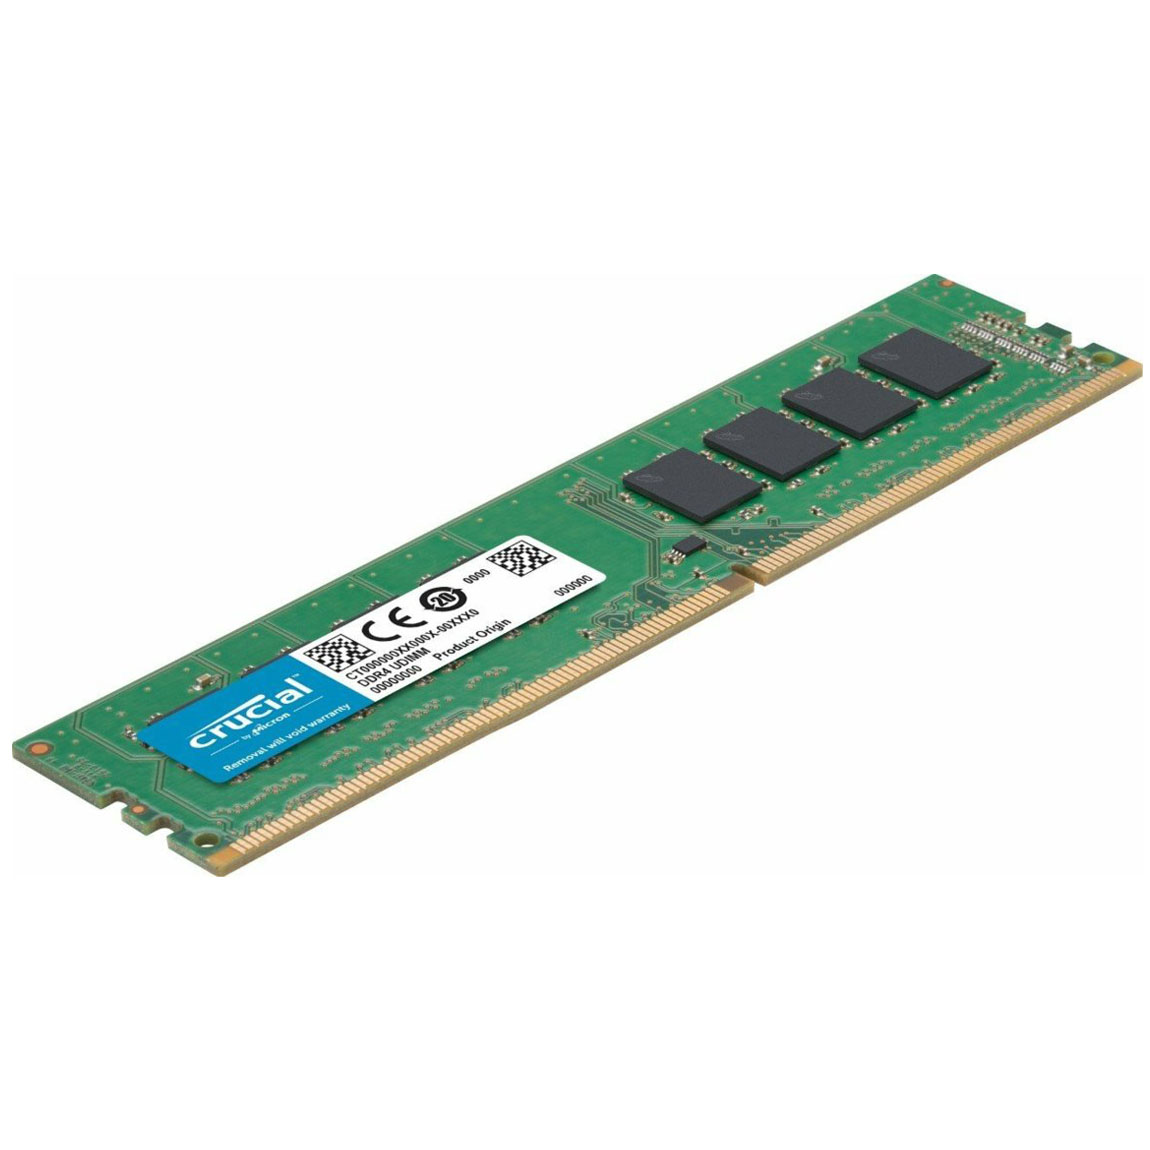 رم دسکتاپ DDR4 تک کاناله 2666 مگاهرتز CL19 کروشیال مدل CT8G4DFRA266 ظرفیت 8 گیگابایت main 1 1